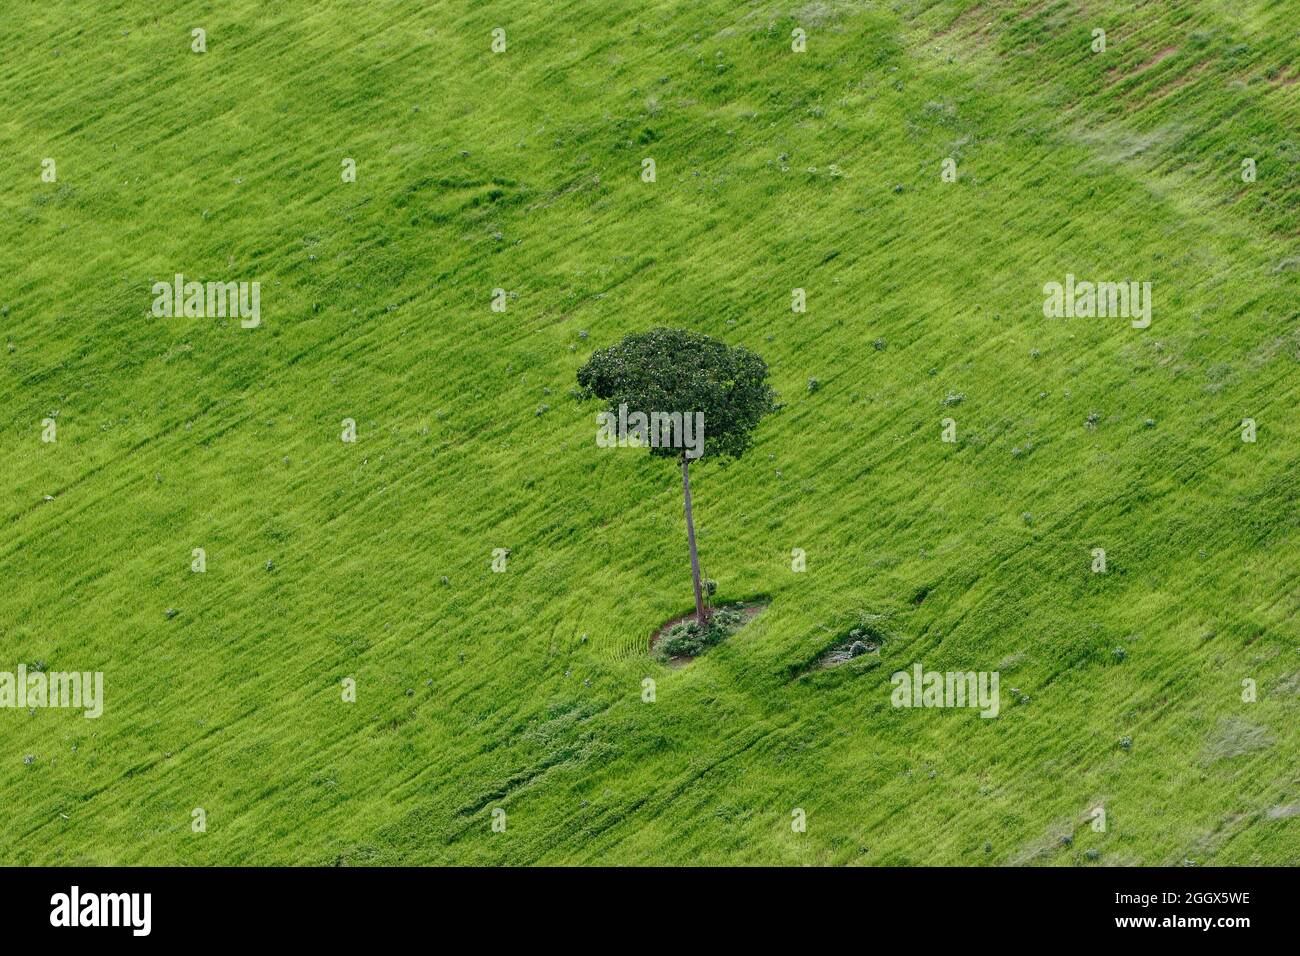 Plantation de soja dans la forêt tropicale amazonienne, isolé arbre à noix du Brésil condamné à mort. Banque D'Images